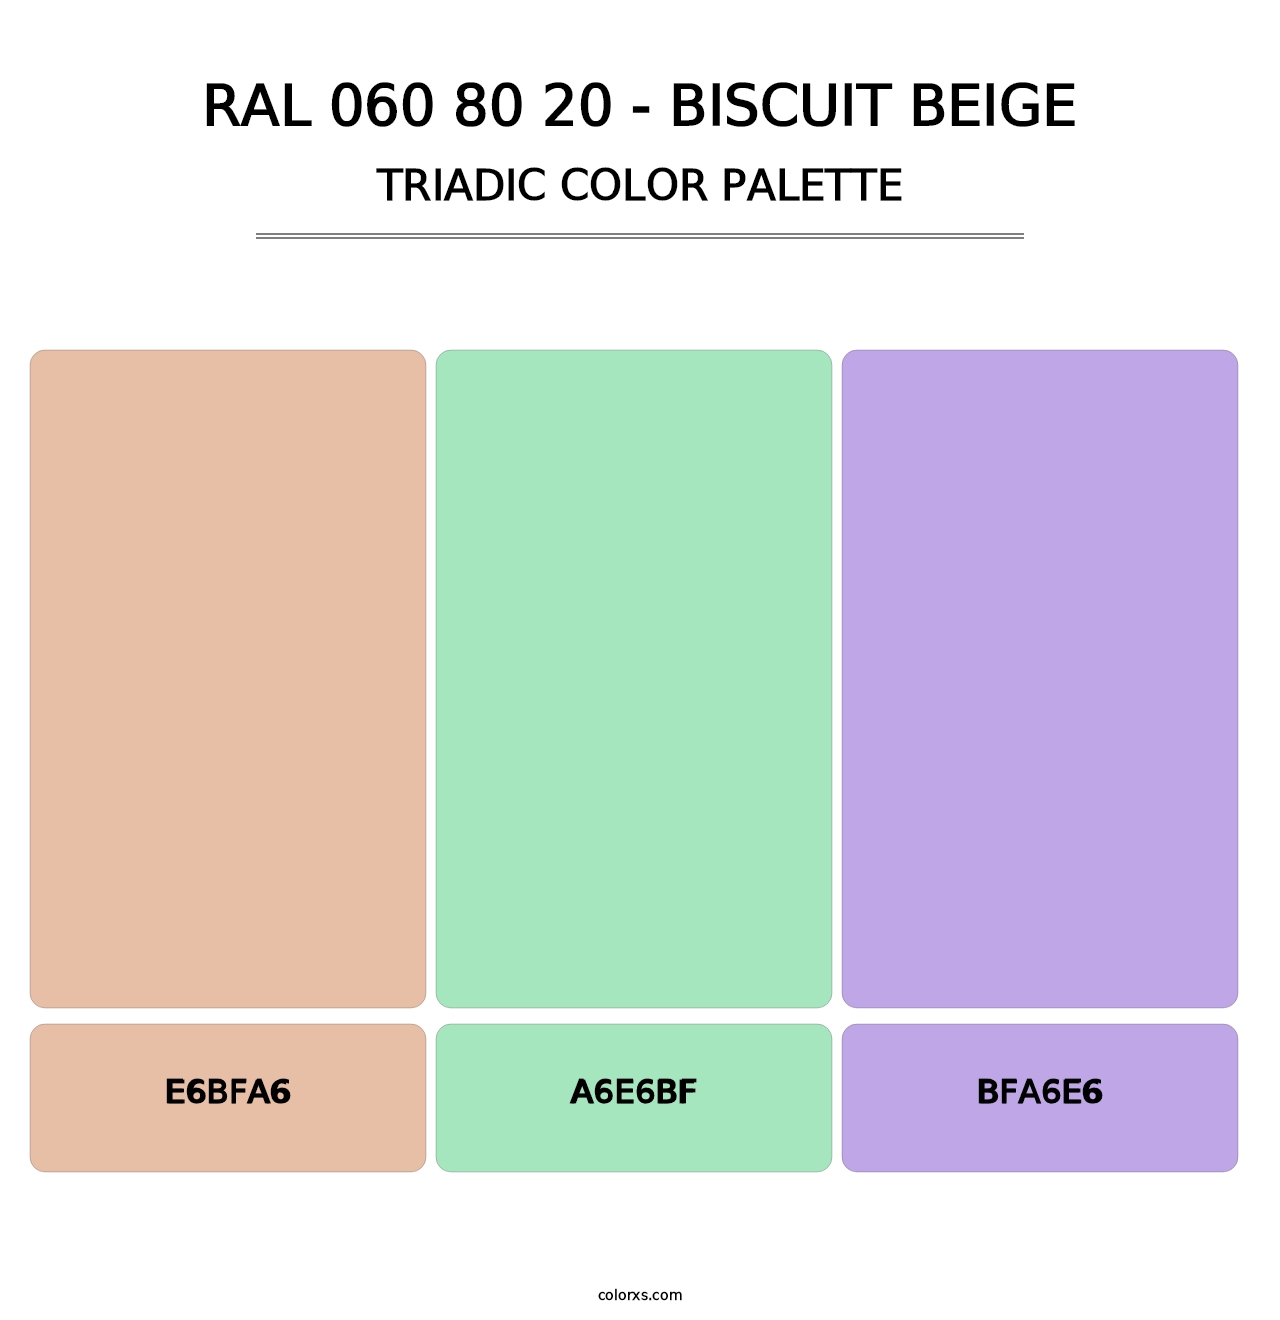 RAL 060 80 20 - Biscuit Beige - Triadic Color Palette